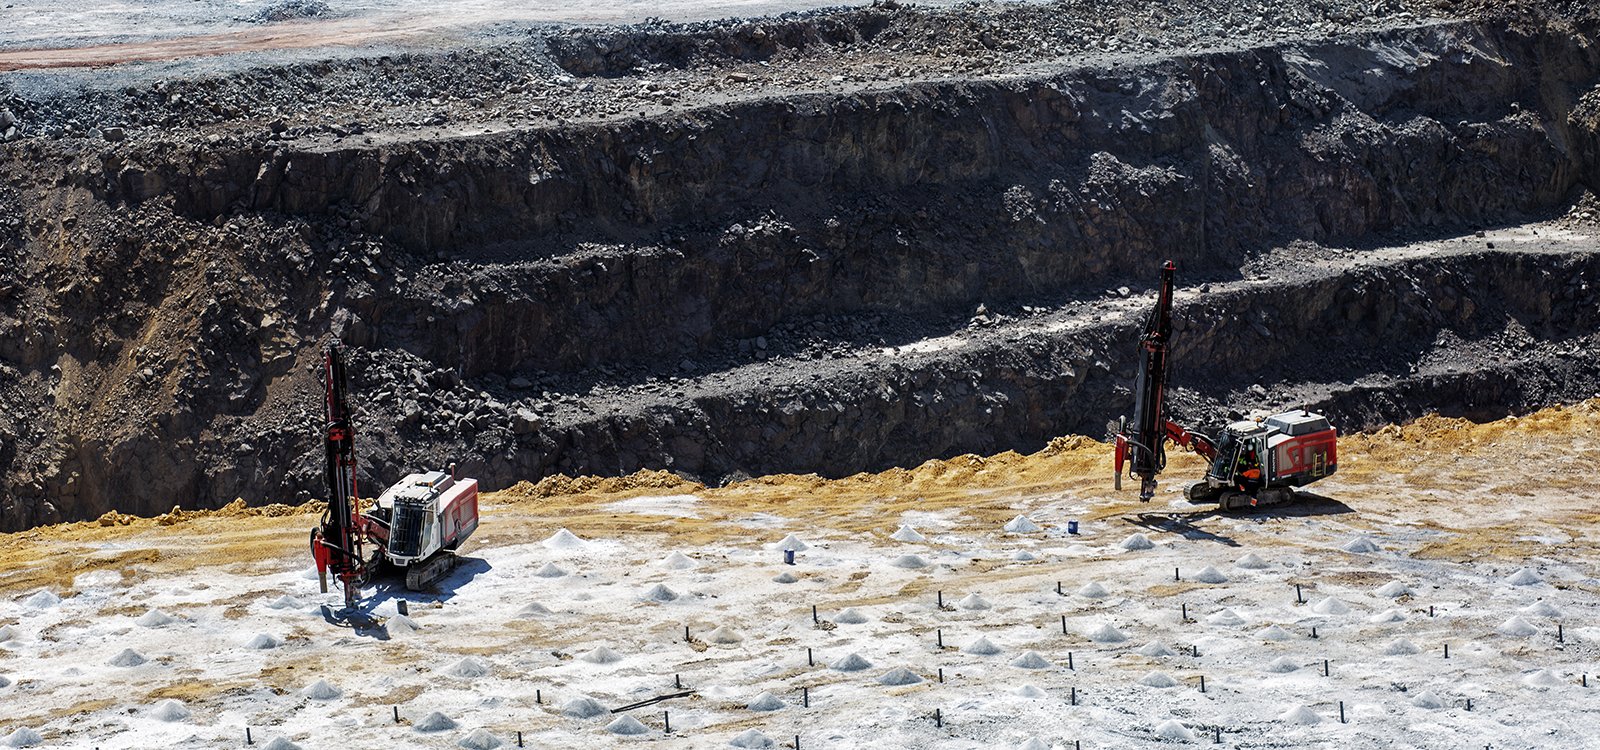 Atalaya Mining triplicará la producción anual hasta 15 millones de toneladas en la mina de cobre Proyecto Riotinto, en el suroeste de España.